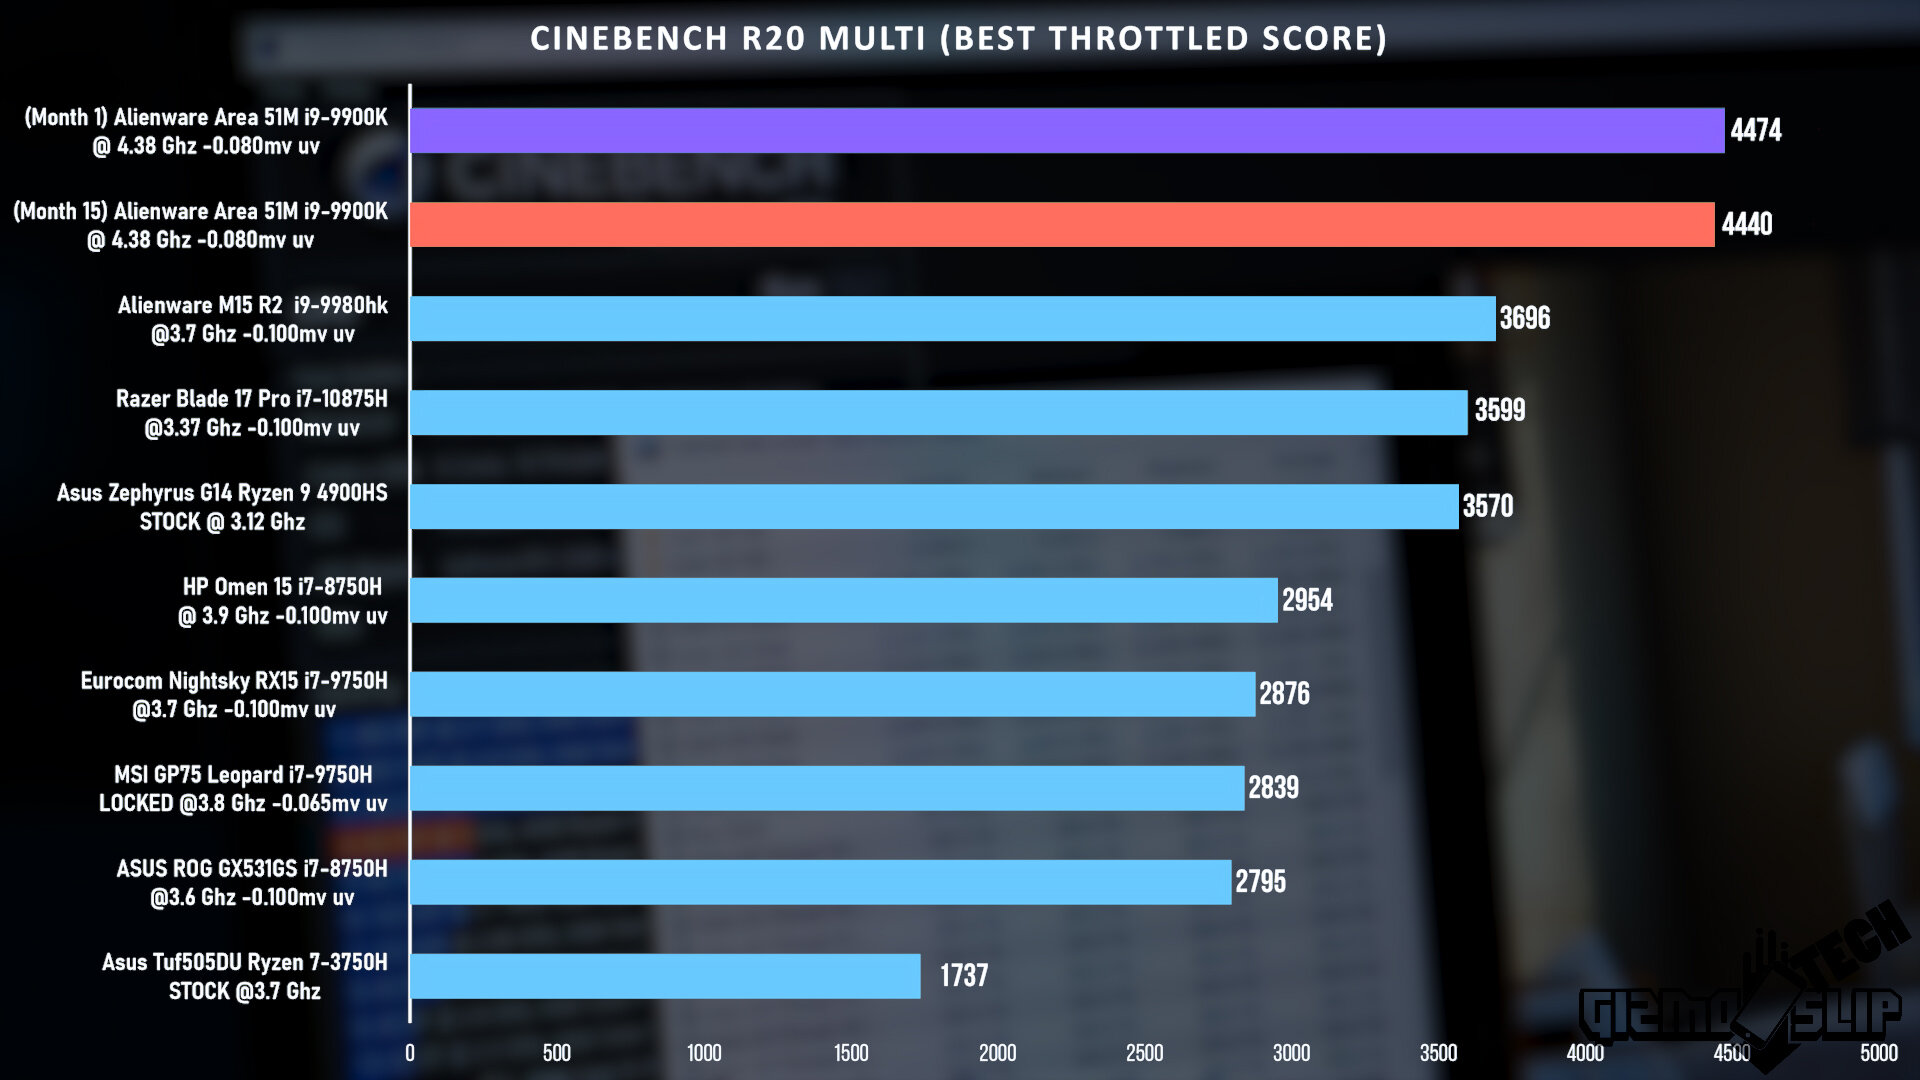 Cinebench R20 Multi Best Throttled Score.jpg